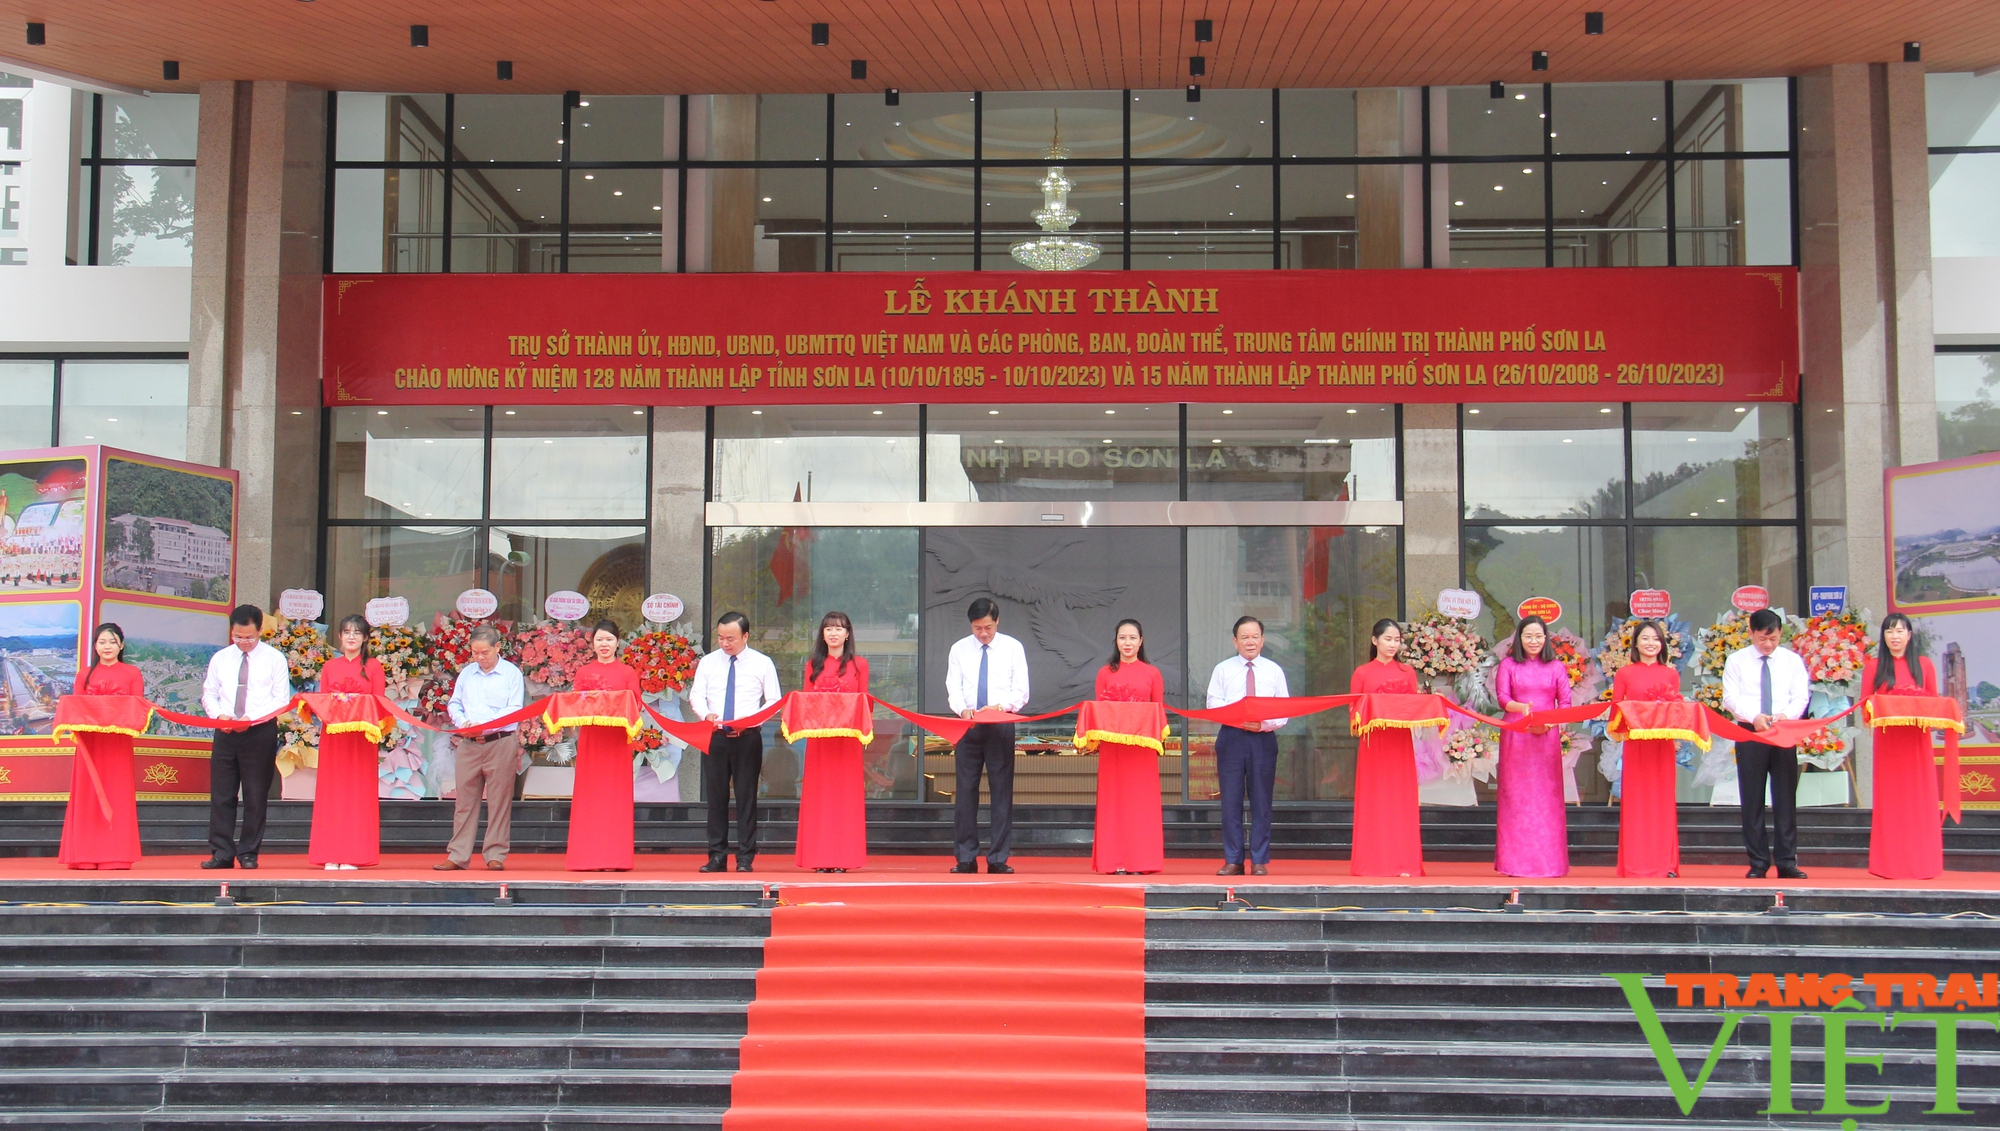 Trụ sở làm việc mới của Thành ủy, HĐND, UBND, UBMTTQ thành phố Sơn La đi vào hoạt động  - Ảnh 1.